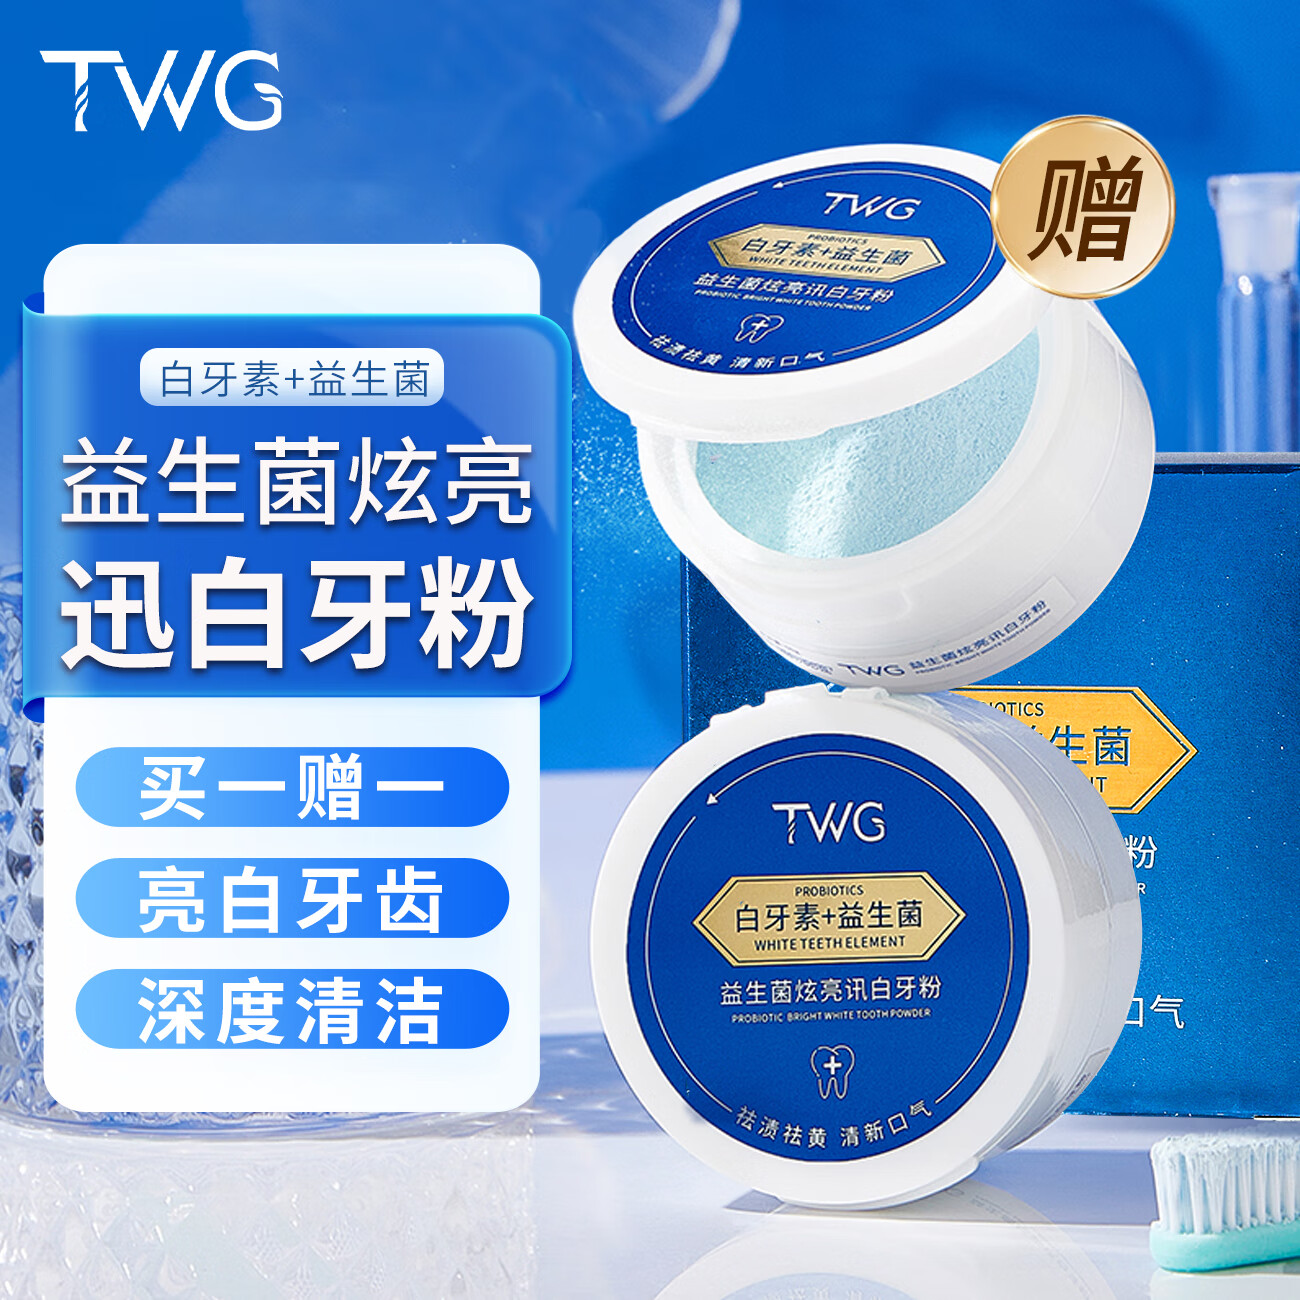 TWG 素益生菌炫亮迅白牙粉清新口气洁净口腔清洁牙齿洗牙粉刷牙粉50g